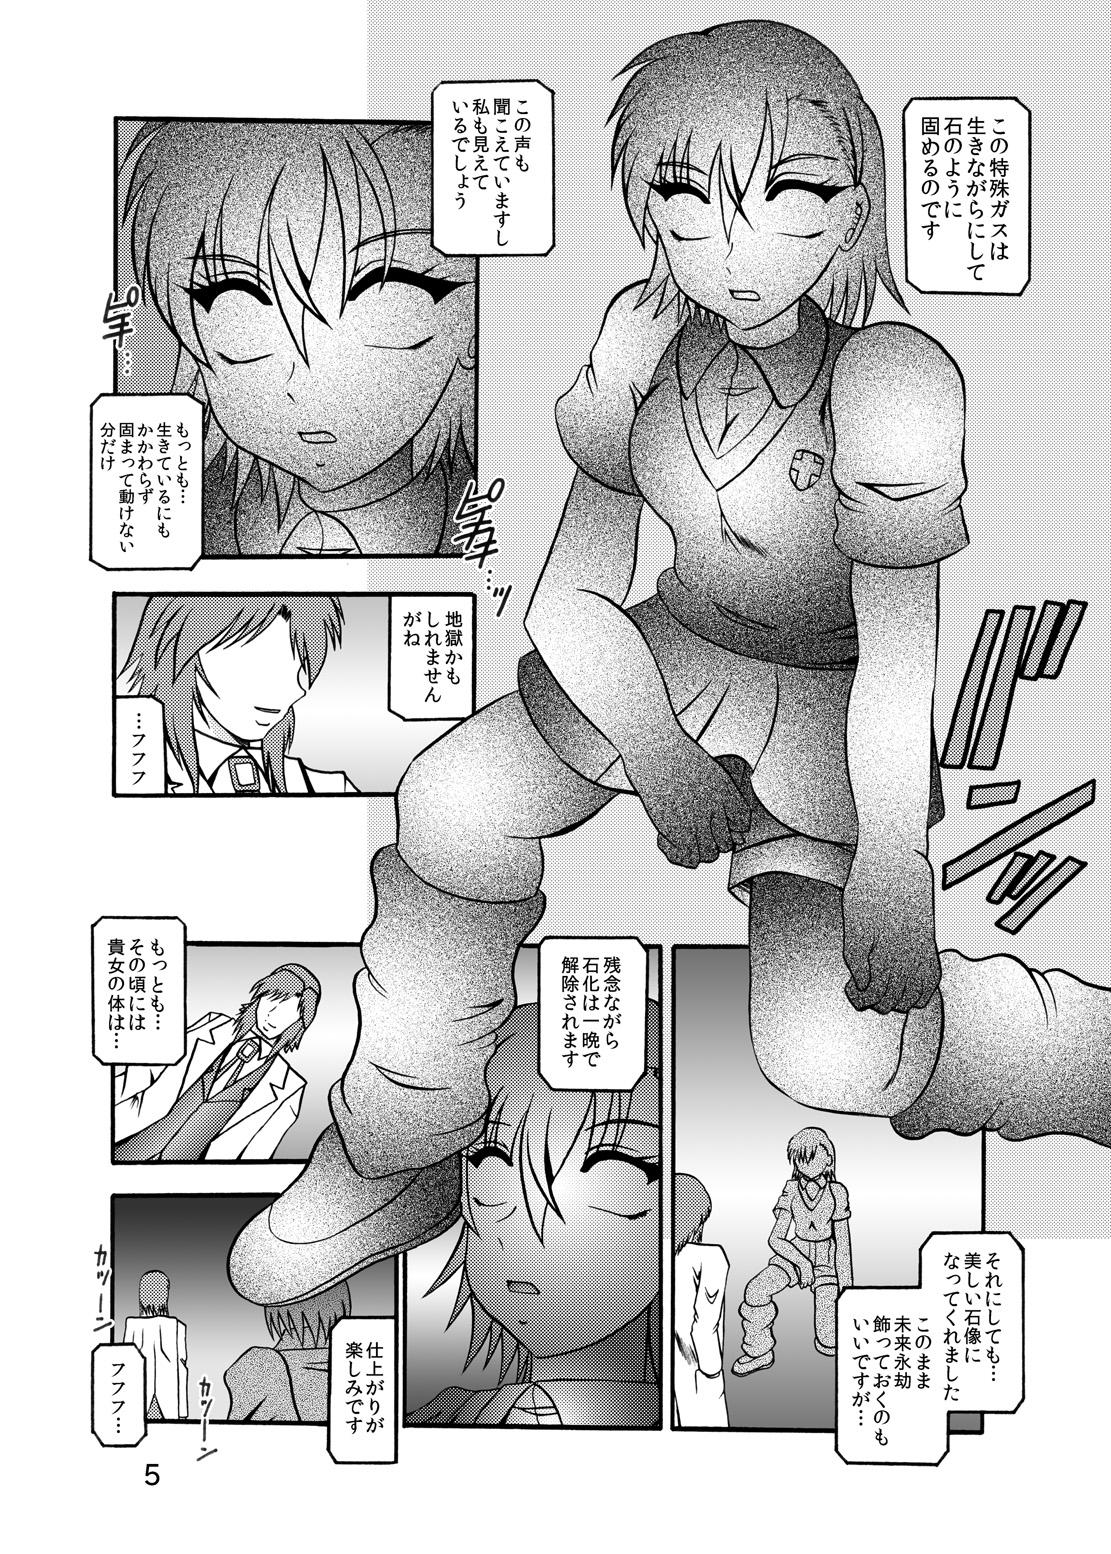 Dom Inyoku Kaizou: Misaka Mikoto - Toaru kagaku no railgun Nerd - Page 3